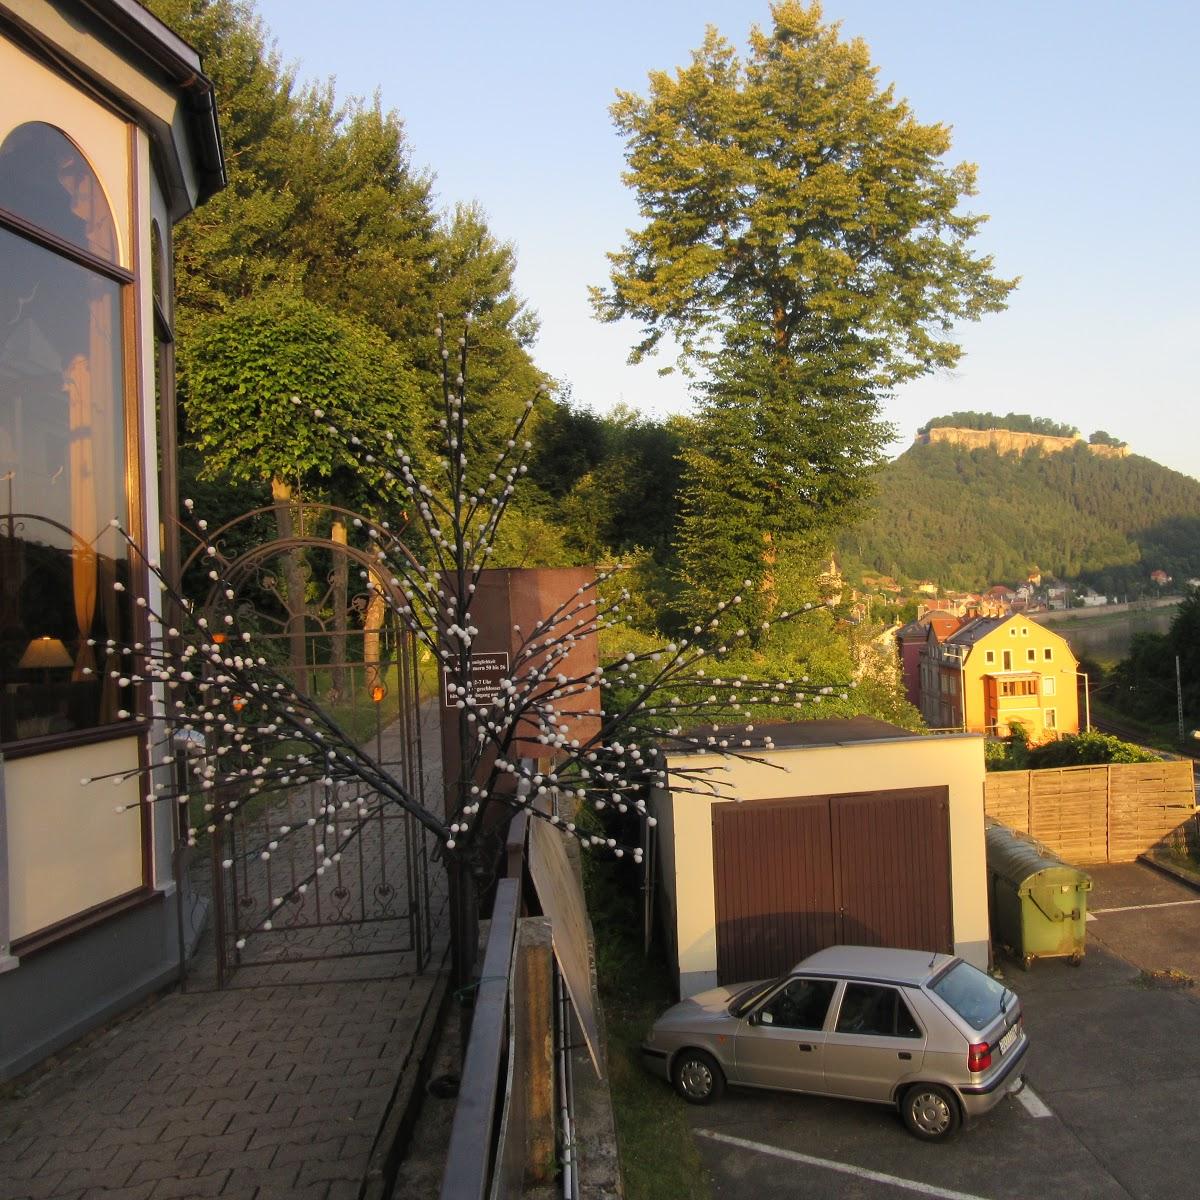 Restaurant "Hotel Lindenhof" in Königstein